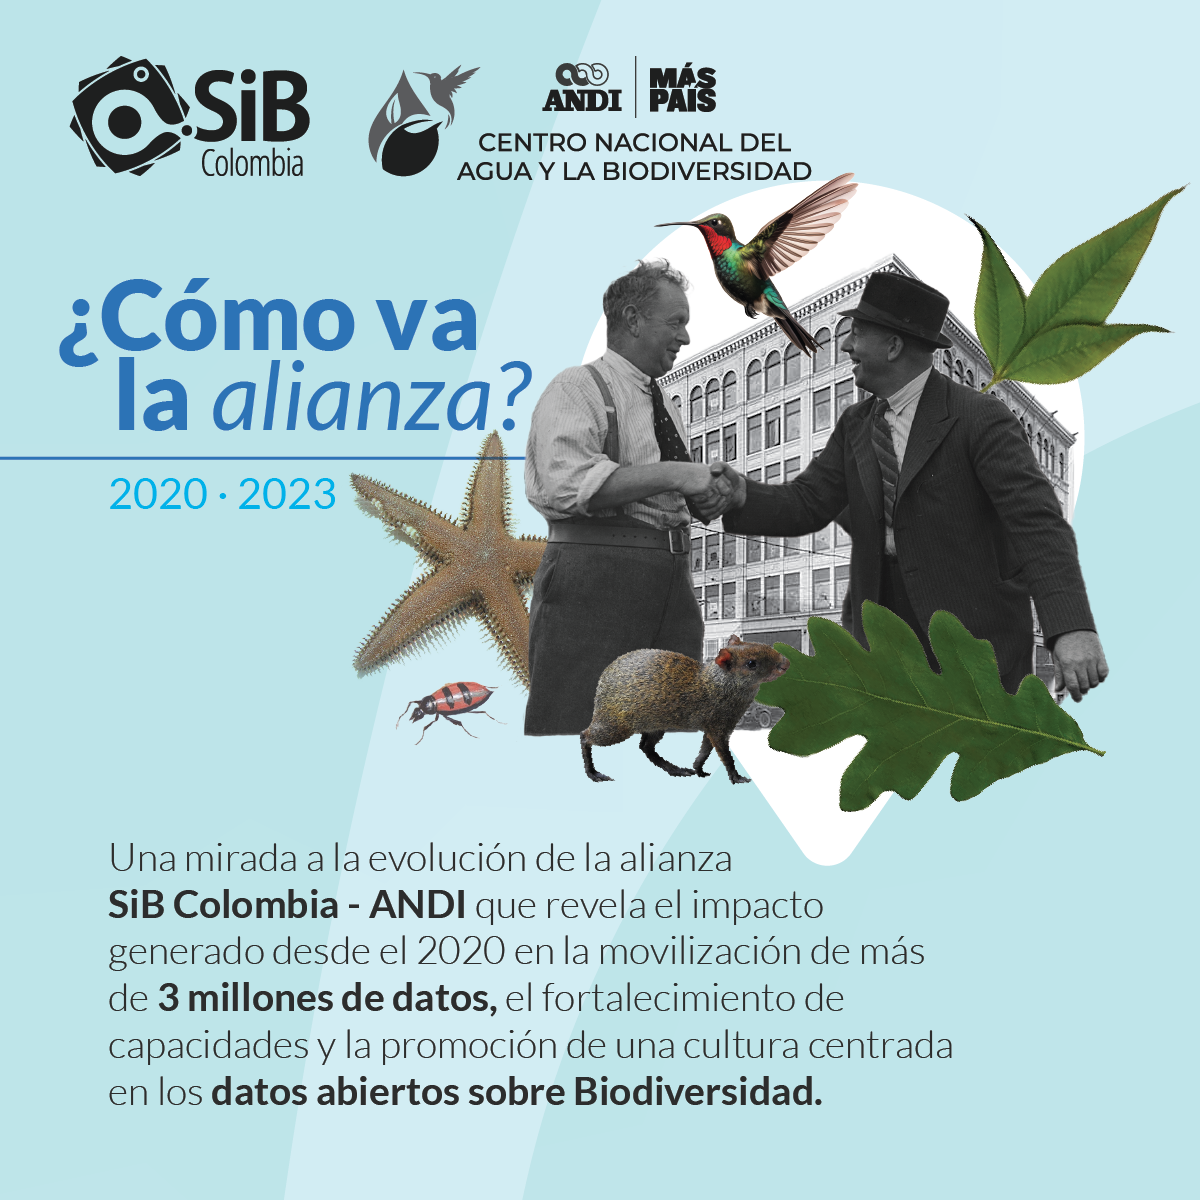 Tercer año de la alianza Datos abiertos sobre biodiversidad desde el sector empresarial.